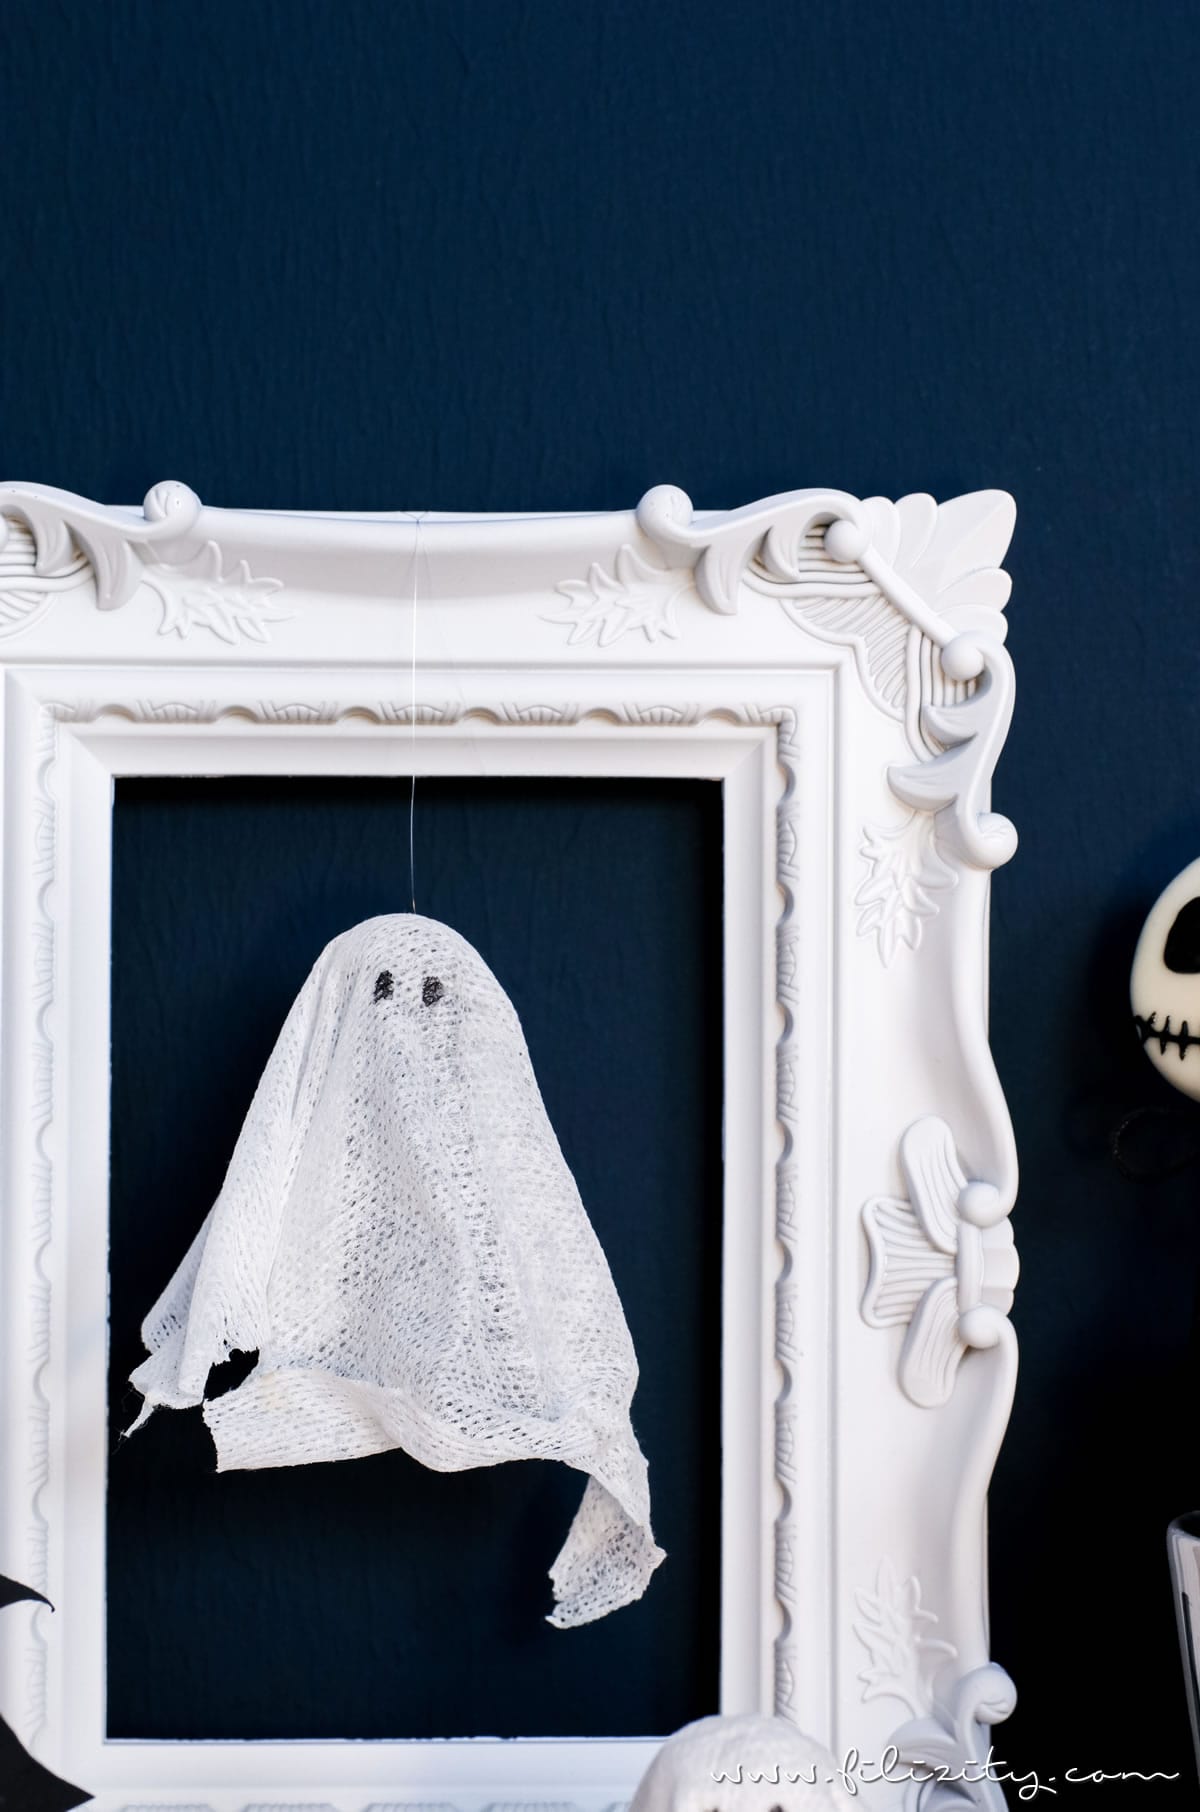 DIY Halloweendeko selber machen: Geister-Lampen und Geister-Anhänger